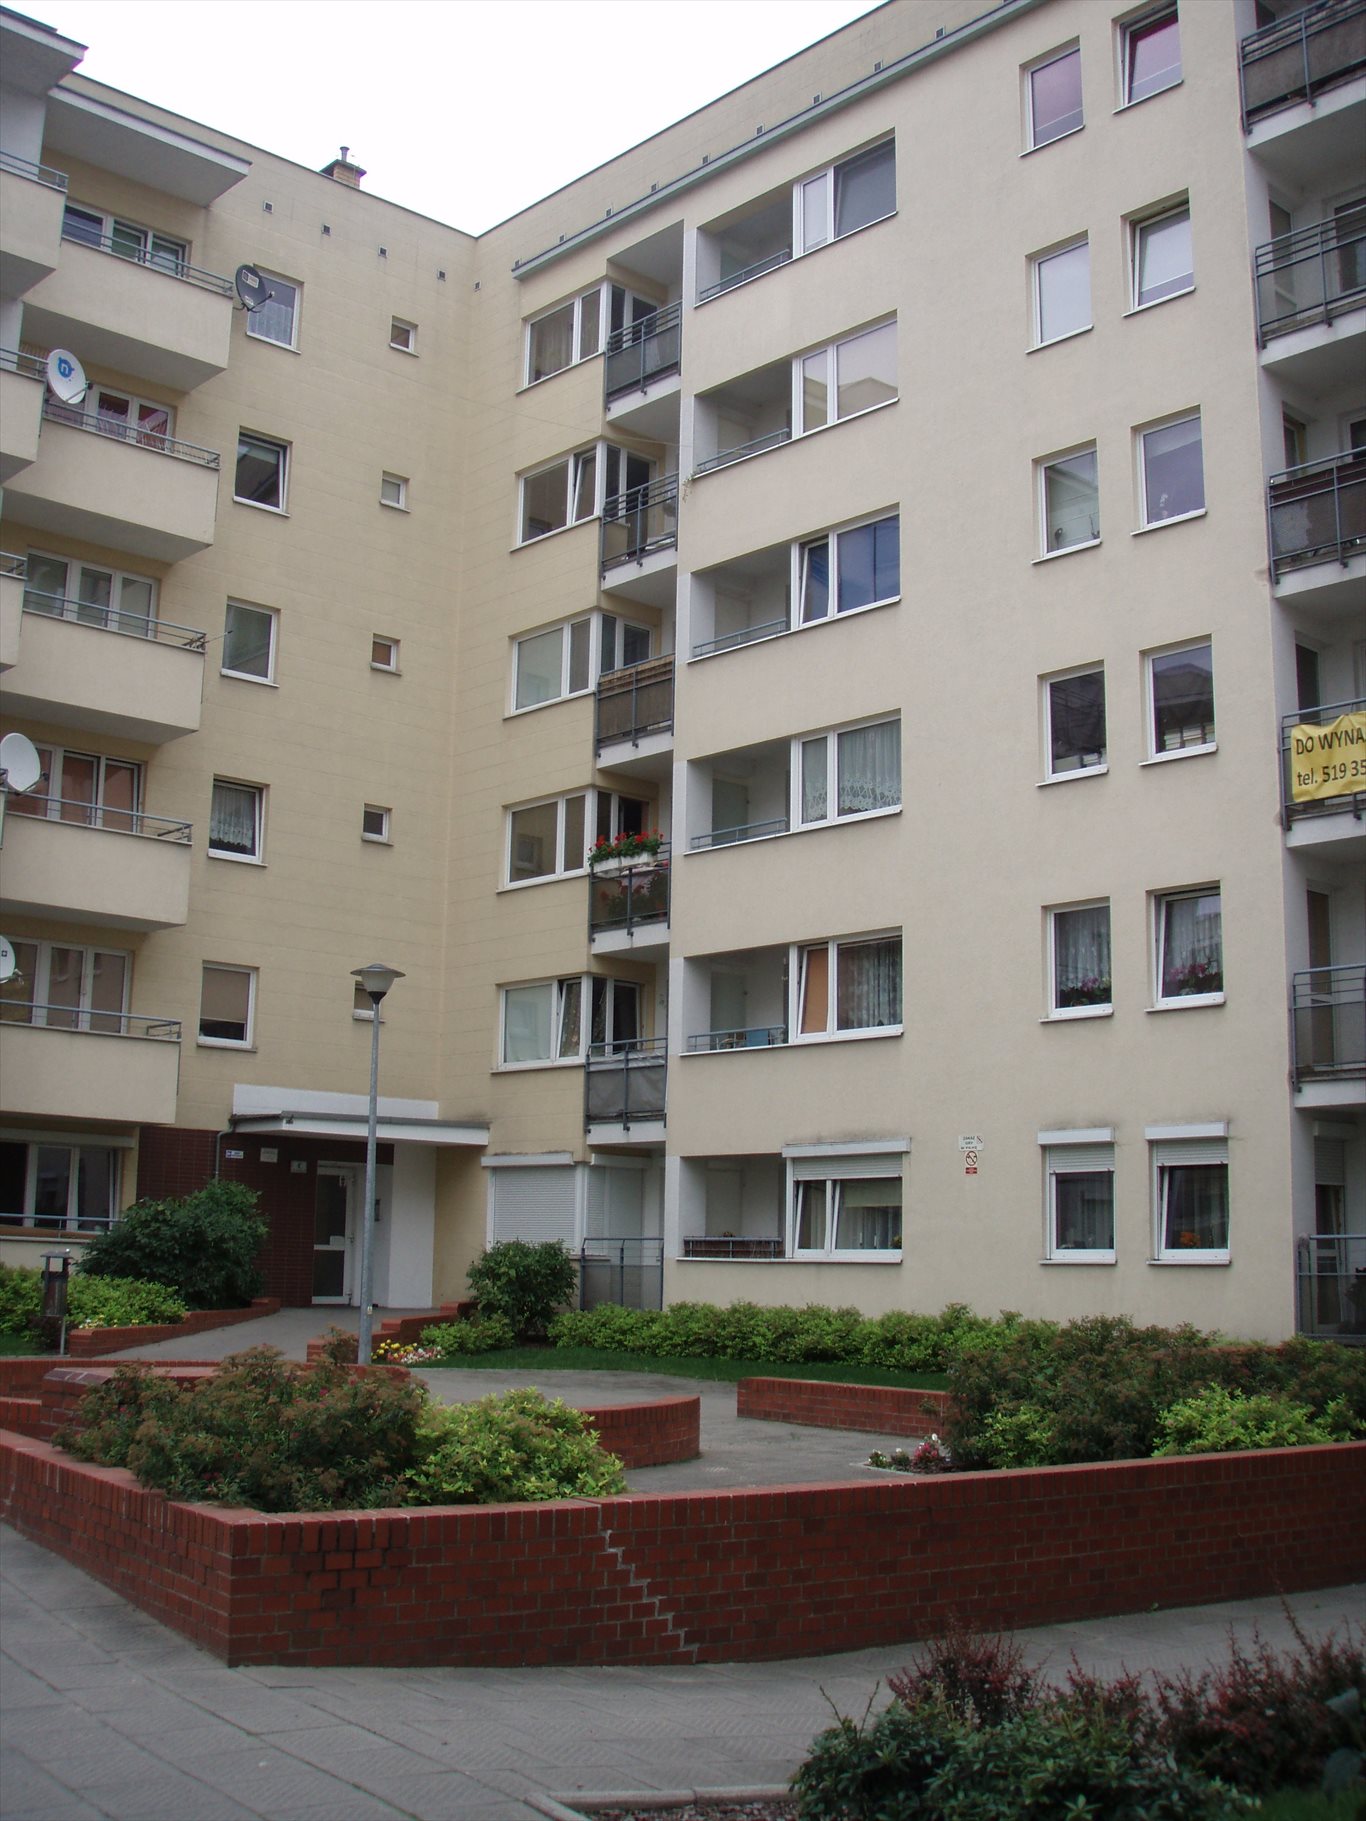 Mieszkanie dwupokojowe na wynajem Poznań, Grunwald, Łazarz, Górki 511215640  45m2 Foto 1